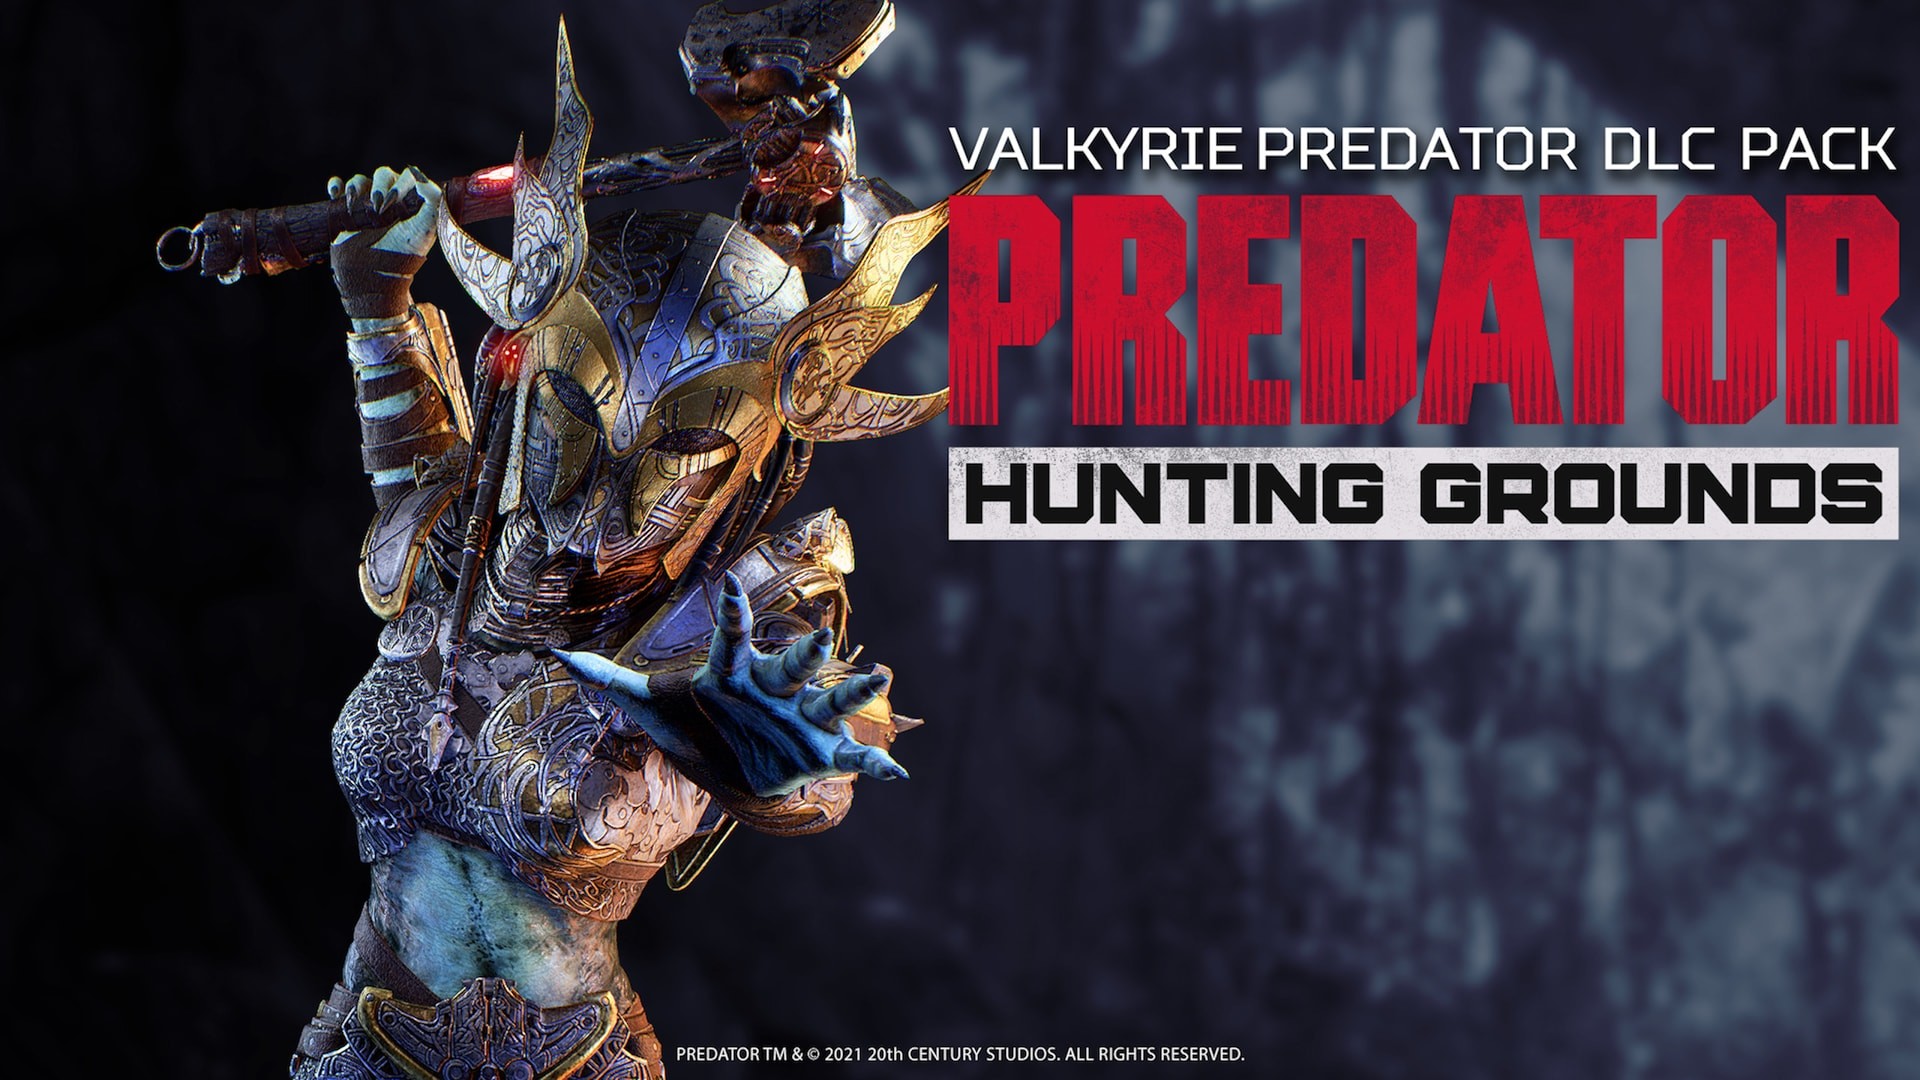 Predator: Hunting Grounds - Valkyrie Predator DLC Pack Steam CD Key 1.46 $